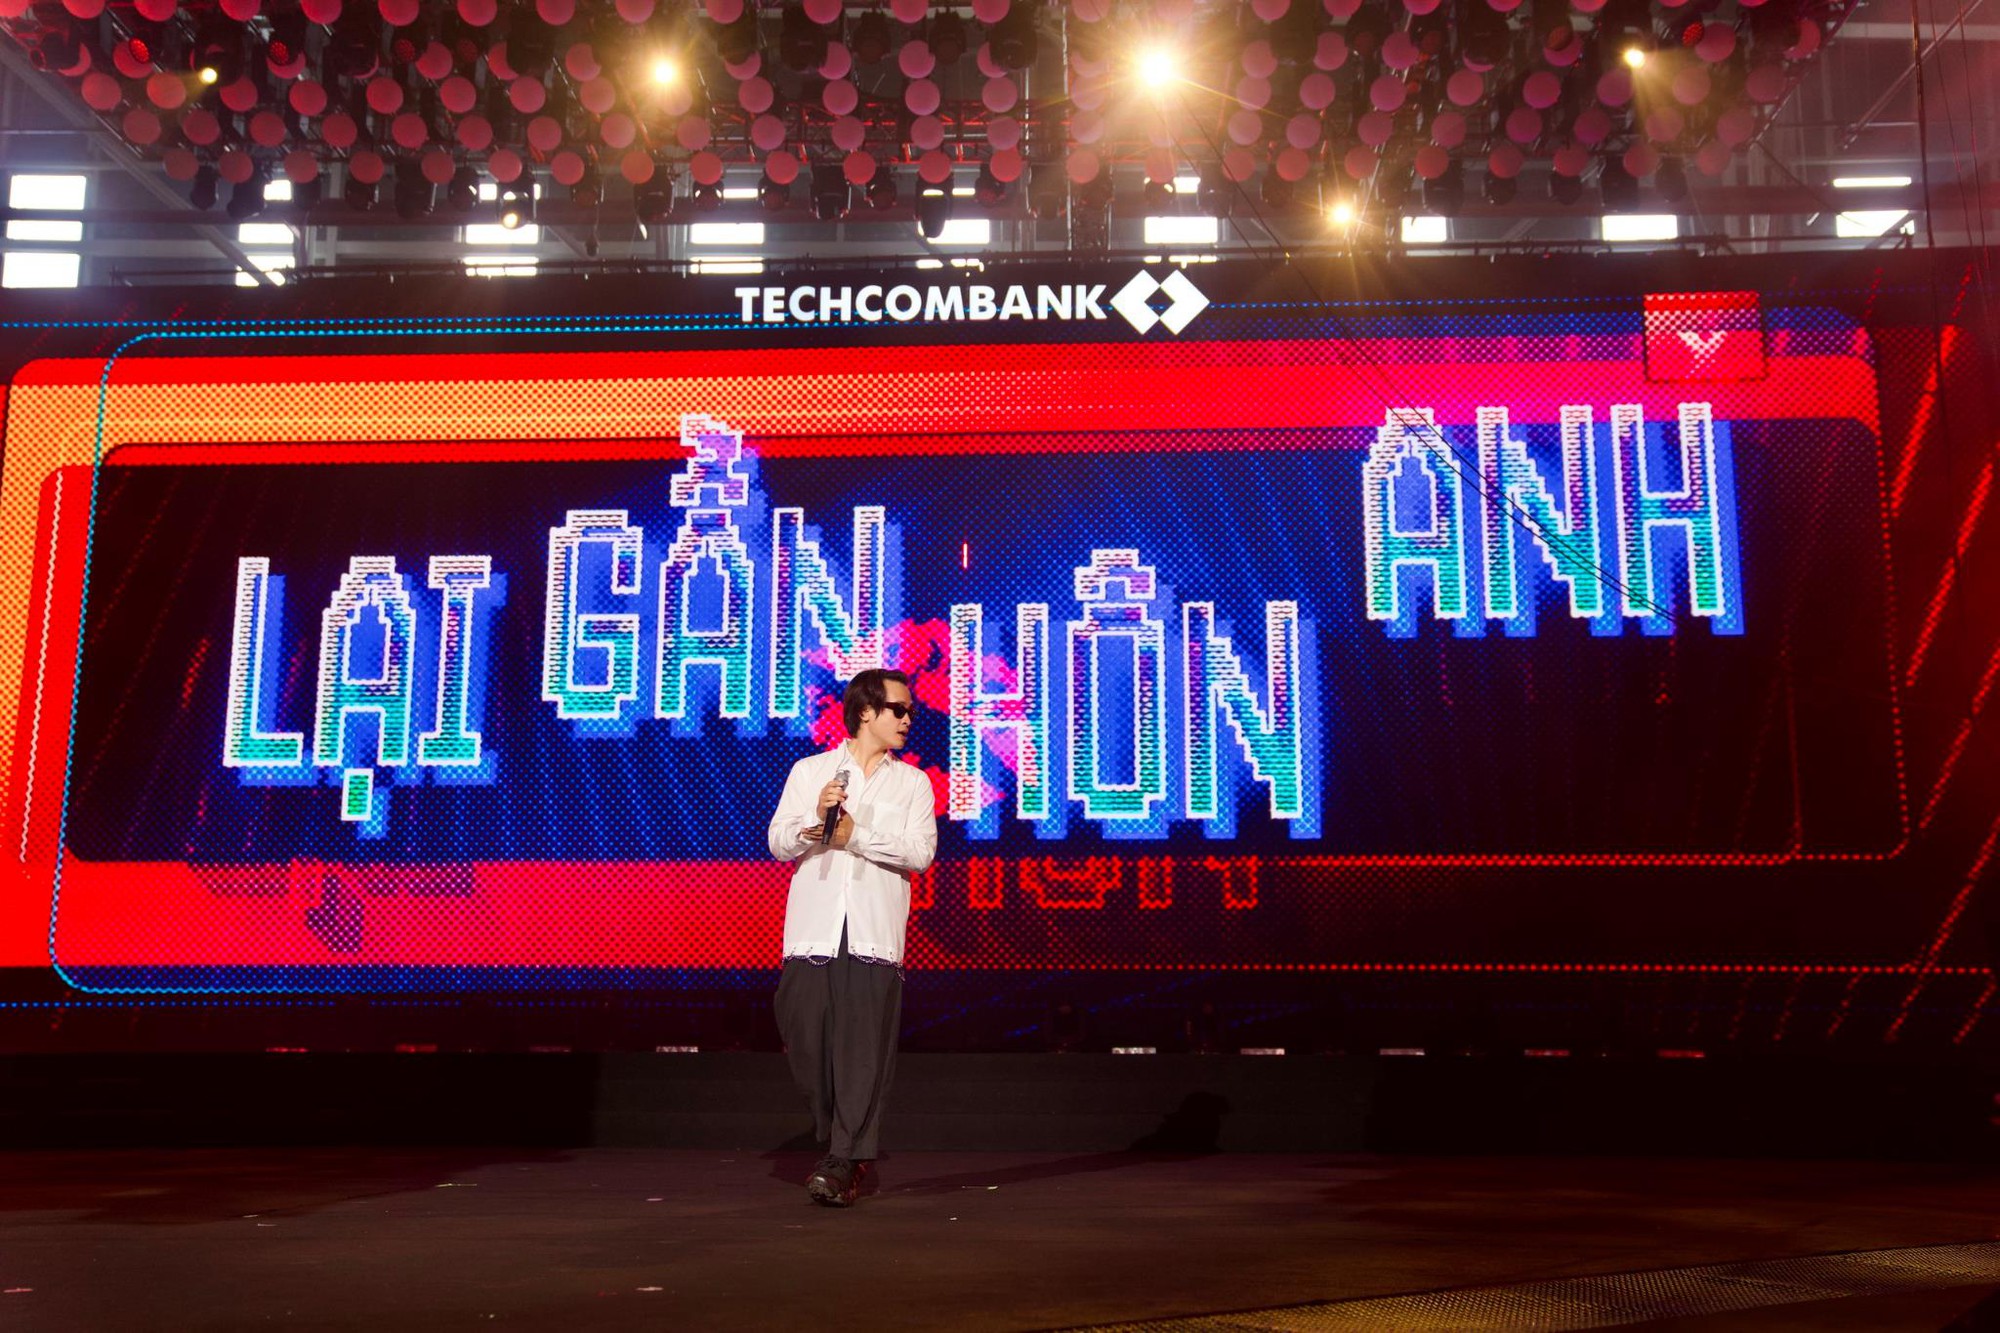 Hà Anh Tuấn, Hồ Ngọc Hà cùng dàn sao hào hứng trong buổi tổng duyệt “Thời Khắc Giao Thời” do Techcombank Priority tổ chức - Ảnh 1.